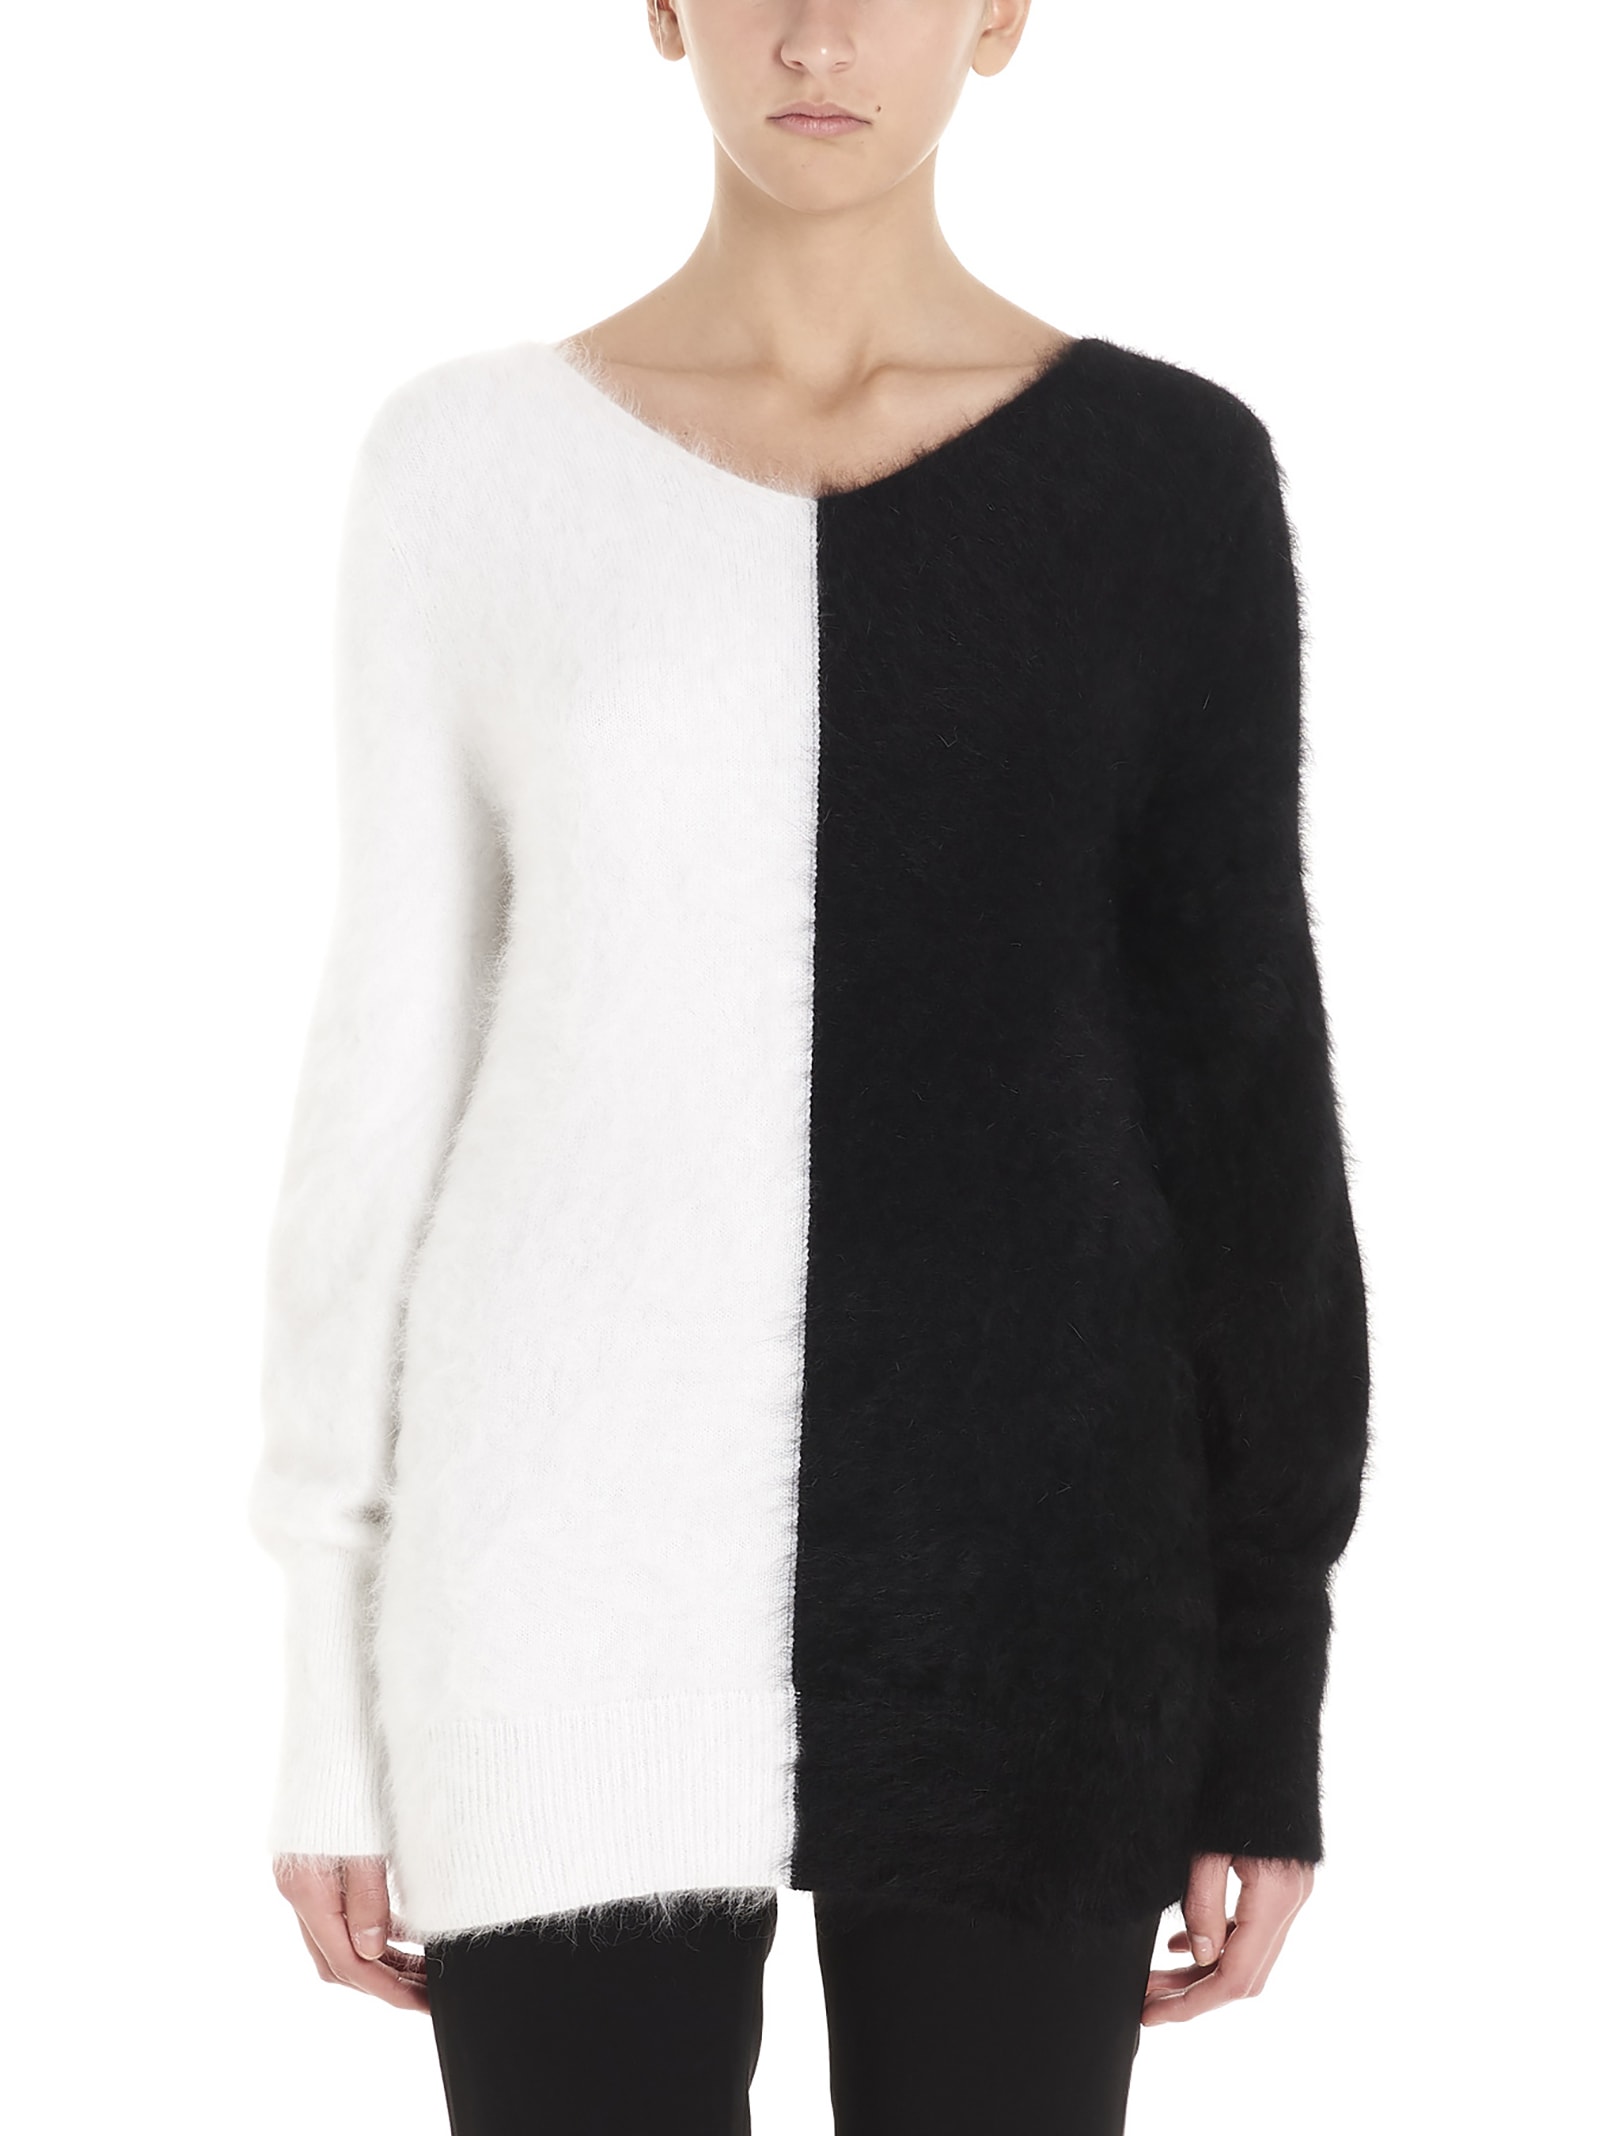 Antonino Valenti Cassandra Sweater In Black & White